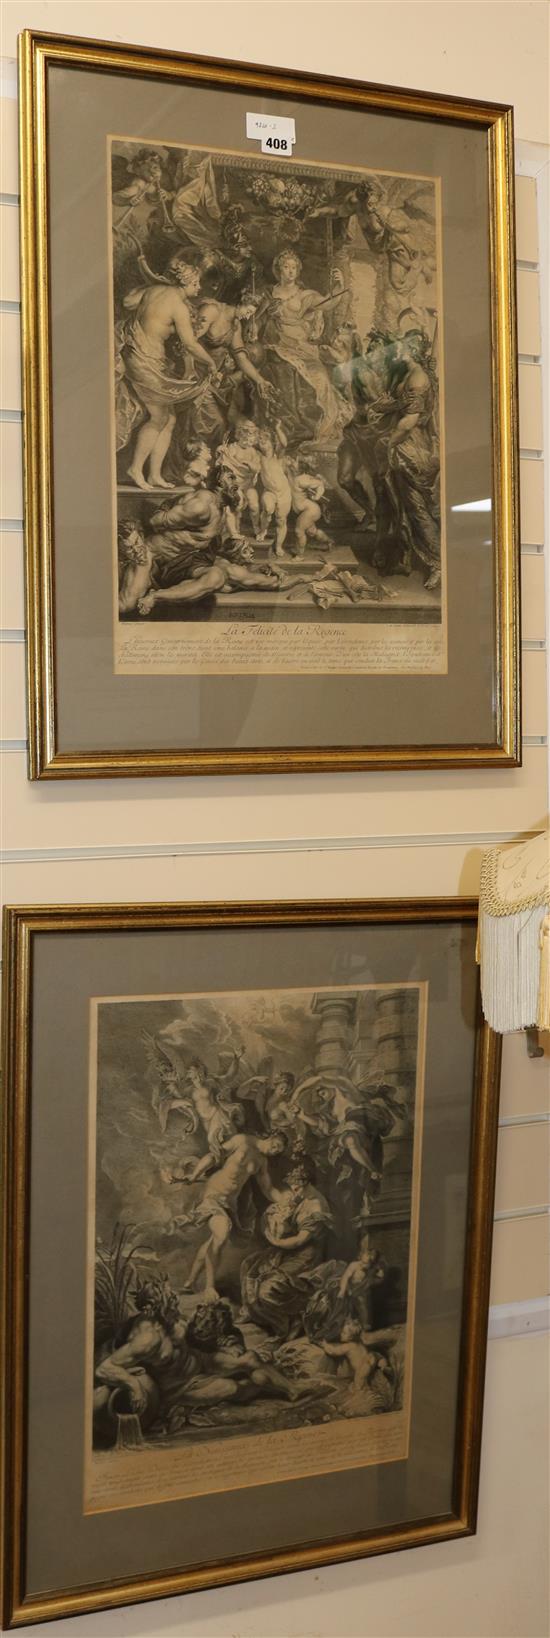 Nattier after Rubens, a pair of engravings, La Felicite de la Regence and La Naissance de la Reine, 50 x 35cm